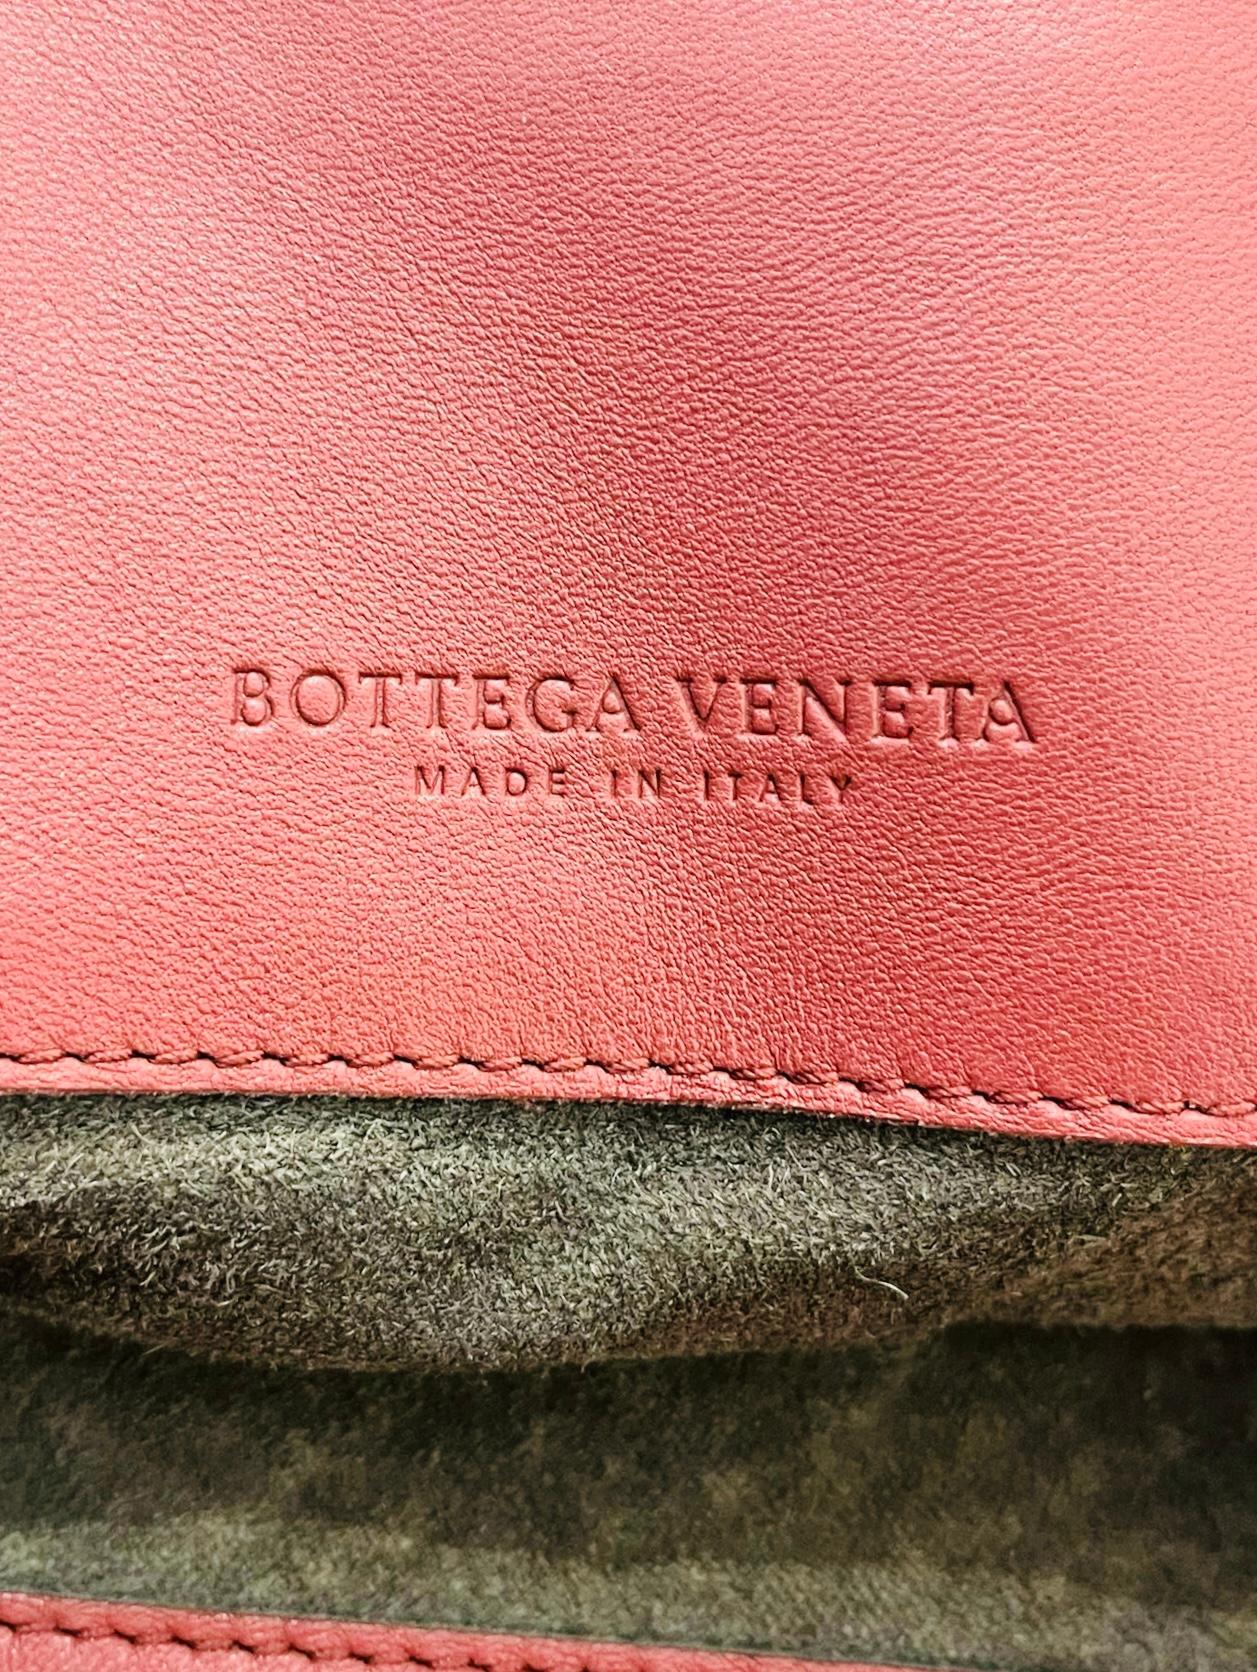 Bottega Veneta Fringe Intrecciato Leather Tote Bag For Sale 2